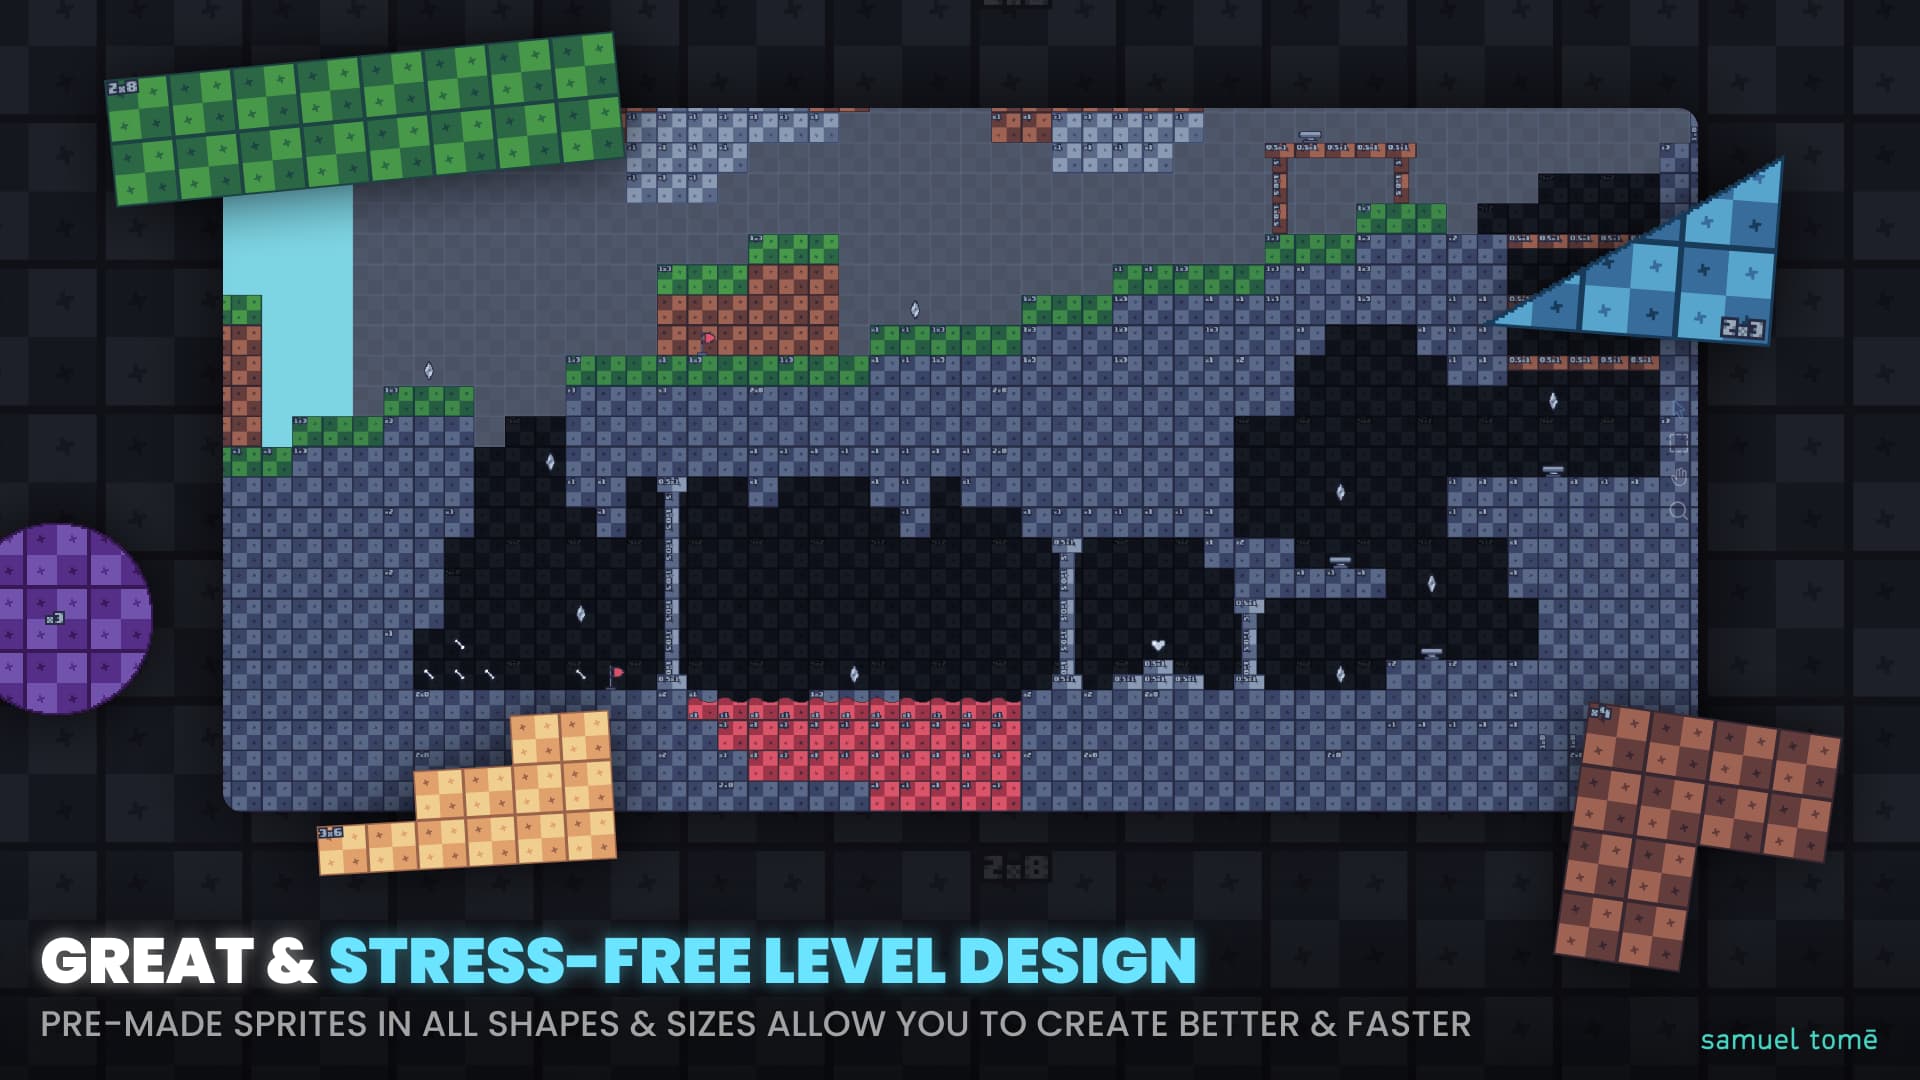 Prototype Asset Pack Image Stress Free Great Level Design - Samuel Tomé Designer and Game Developer